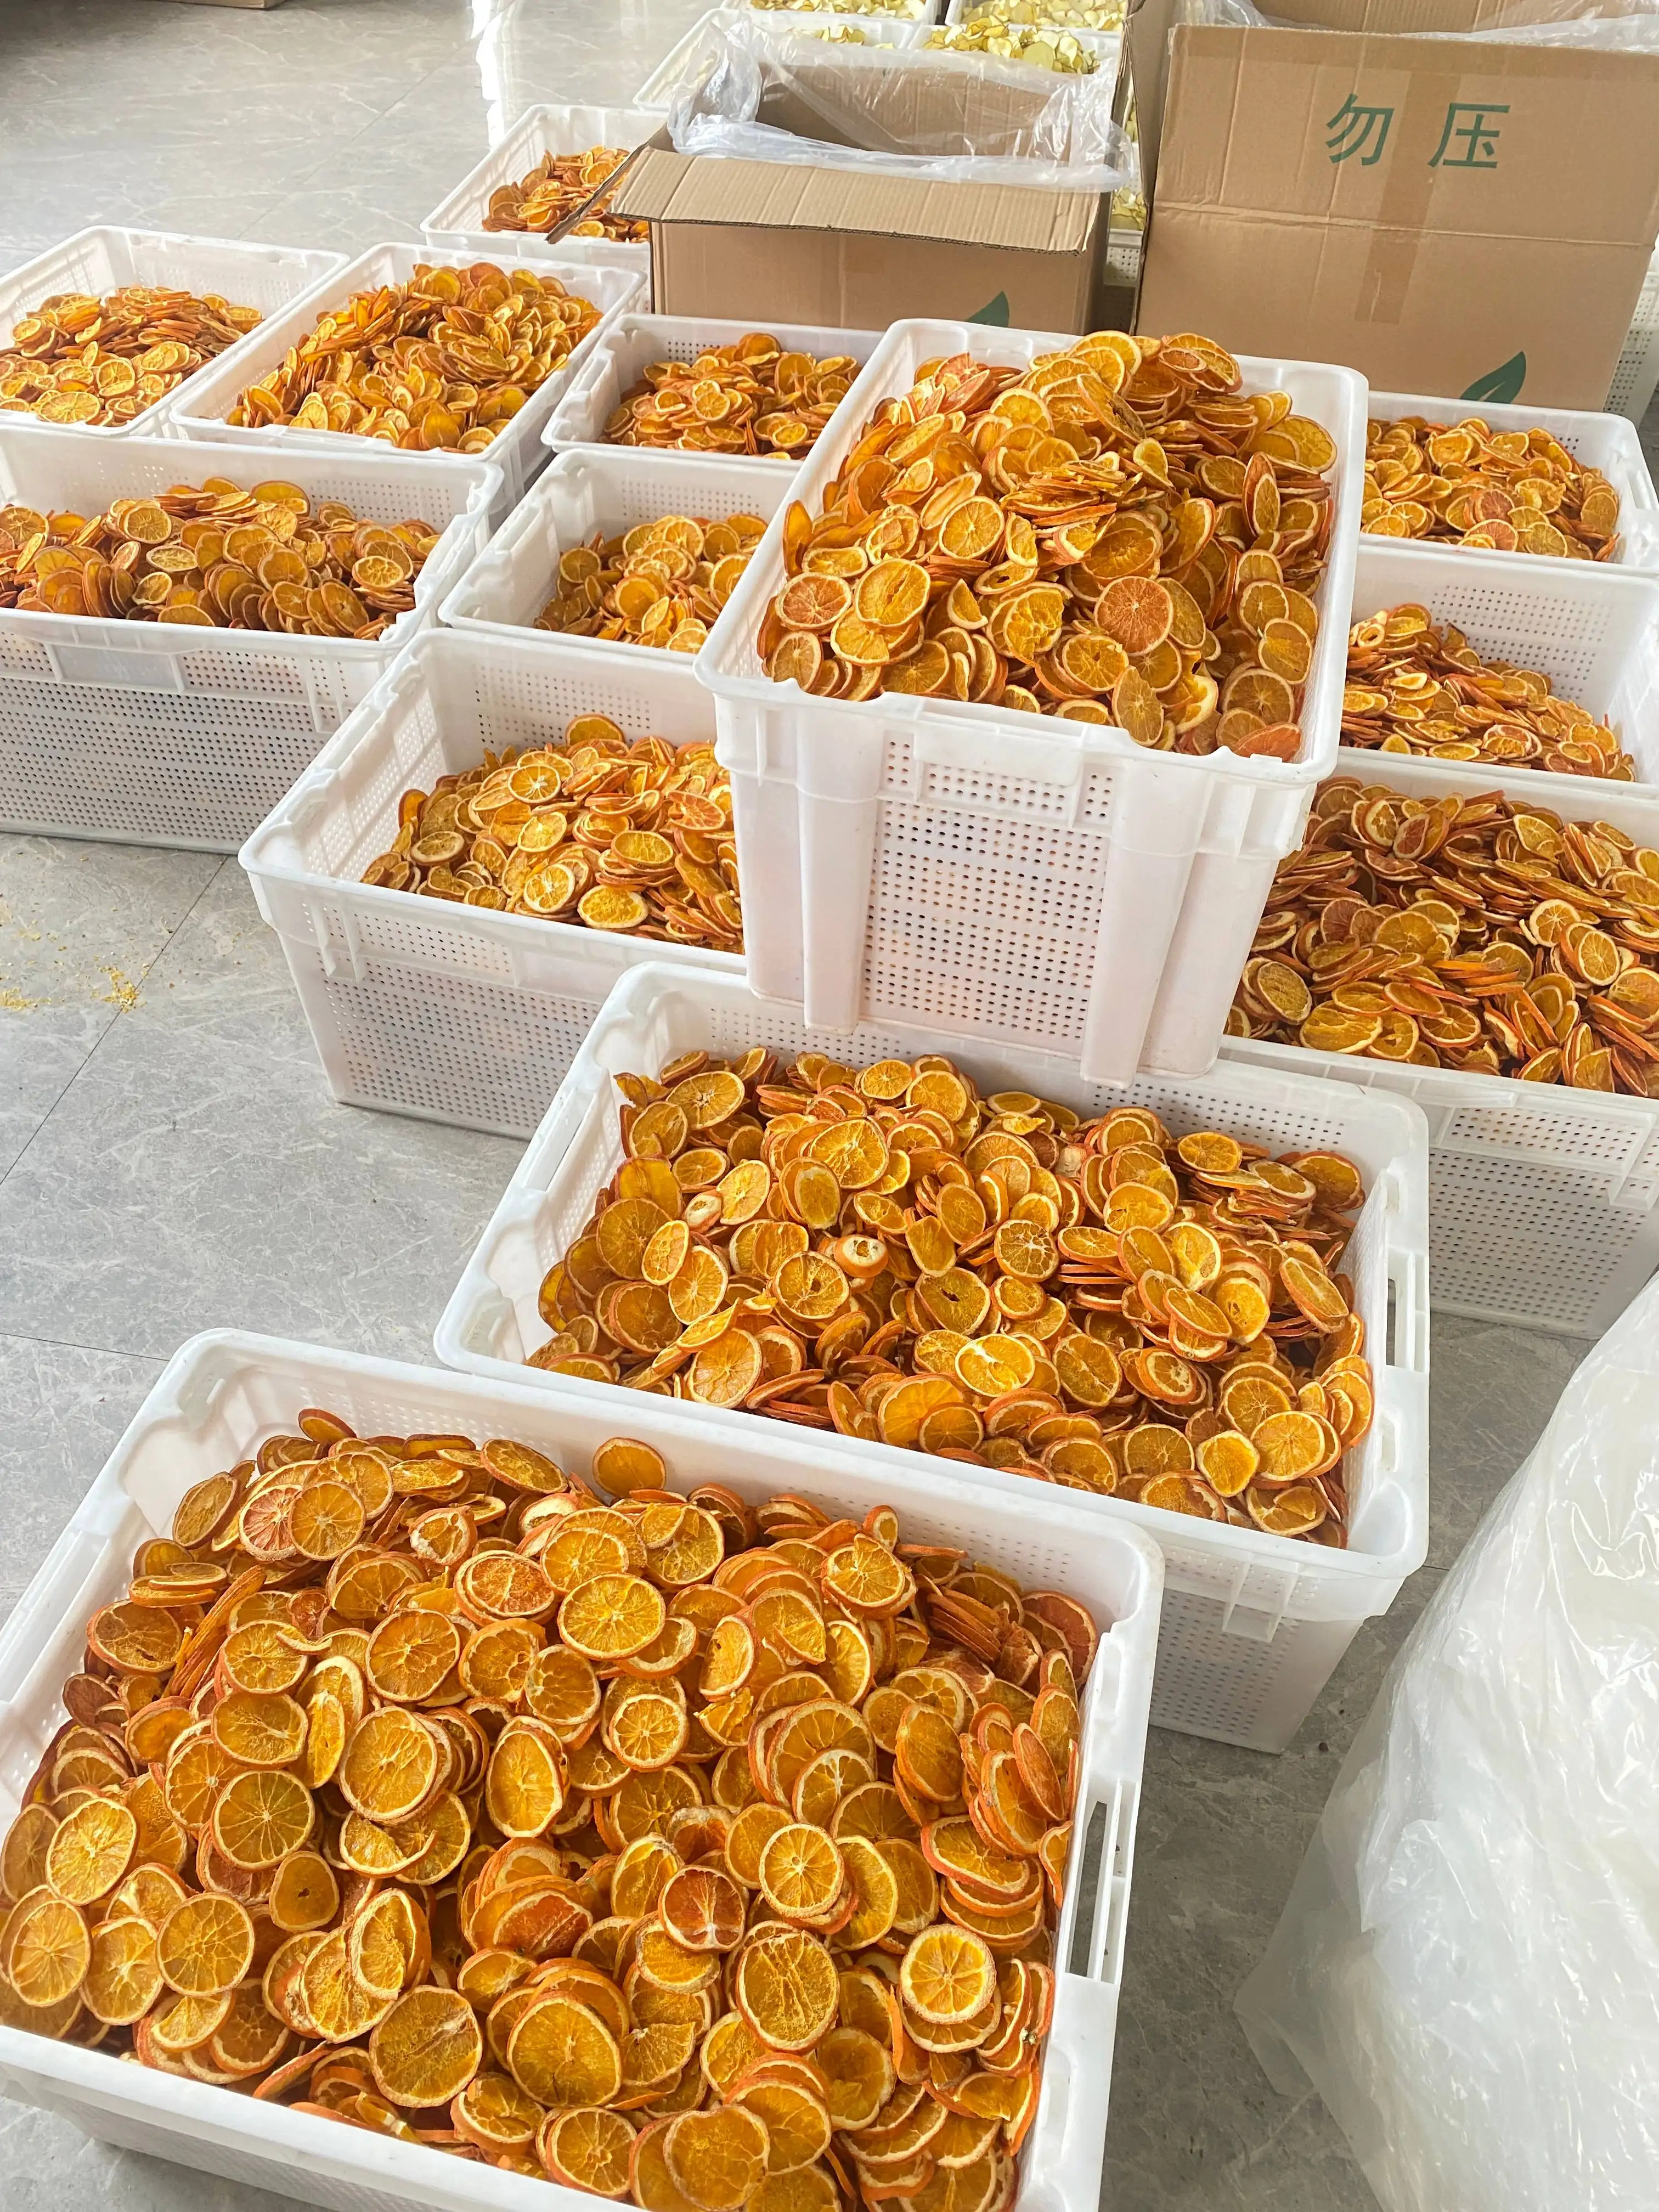 Çin kökenli yüksek kalite komple yuvarlak kuru meyve fabrika kaynağı düşük ucuz toptan kurutulmuş portakal dilimleri çay içme için